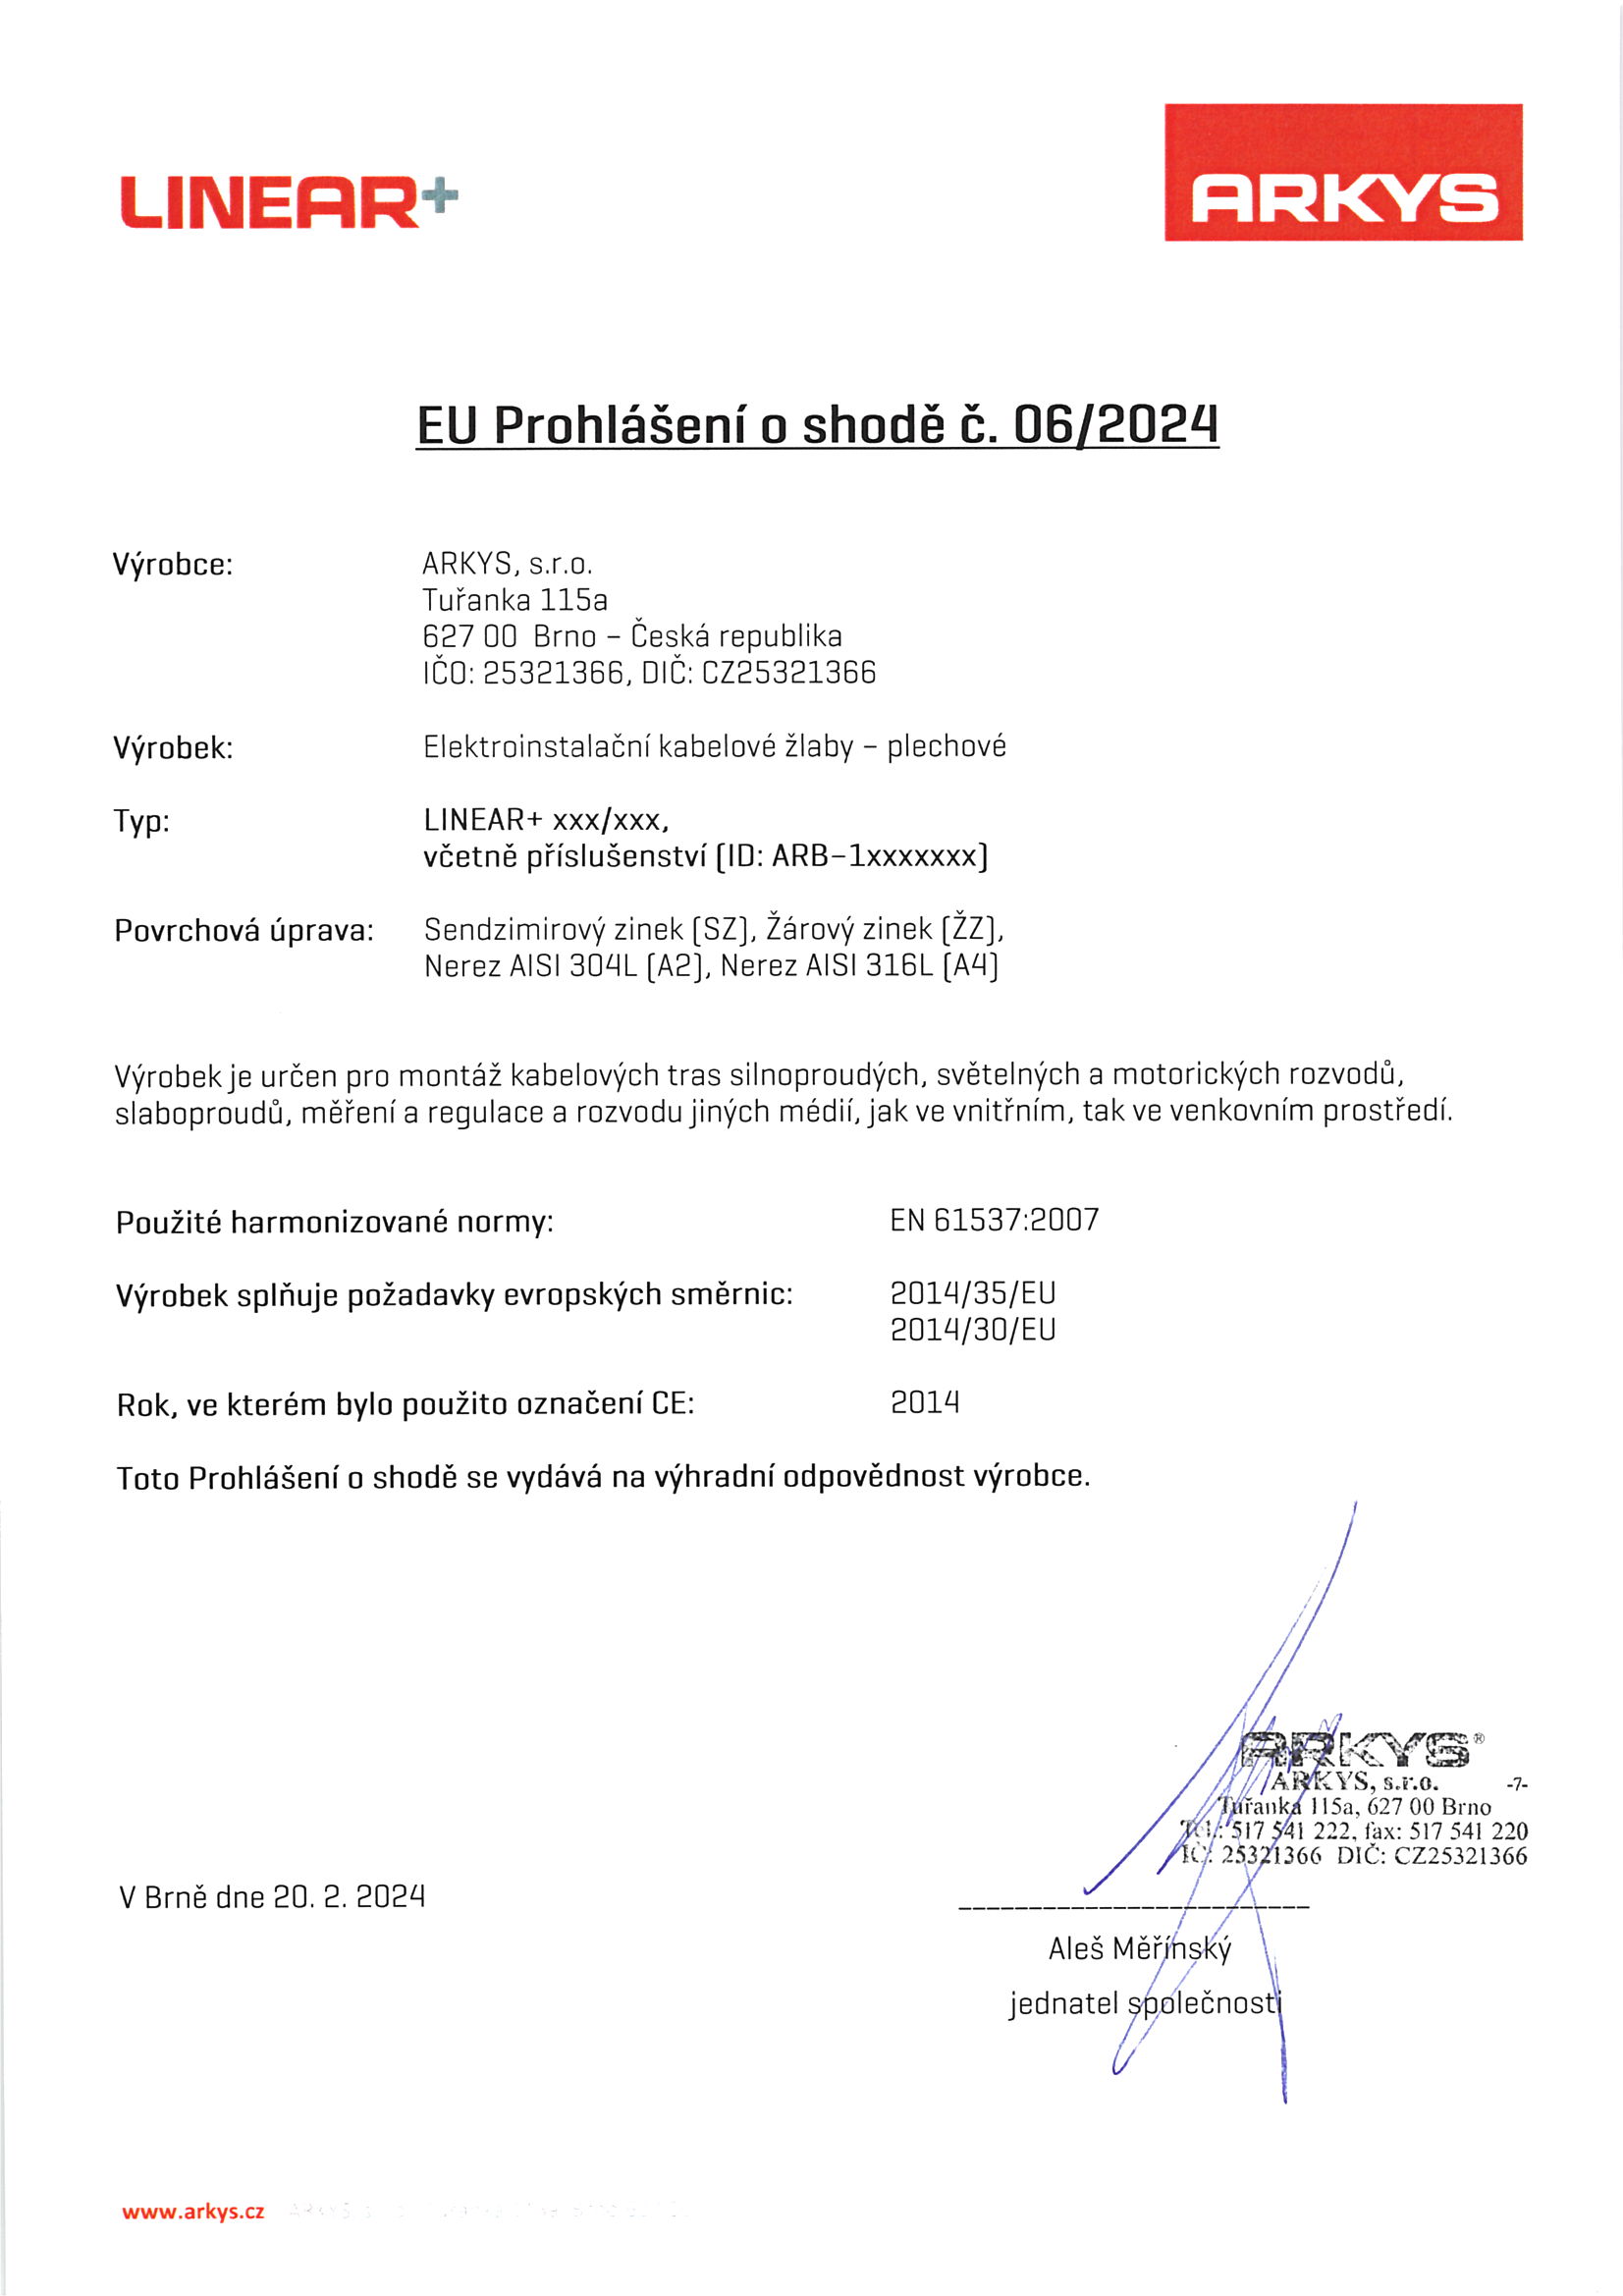 06. EU Prohlášení o shodě č 6-2024 Linear CZ